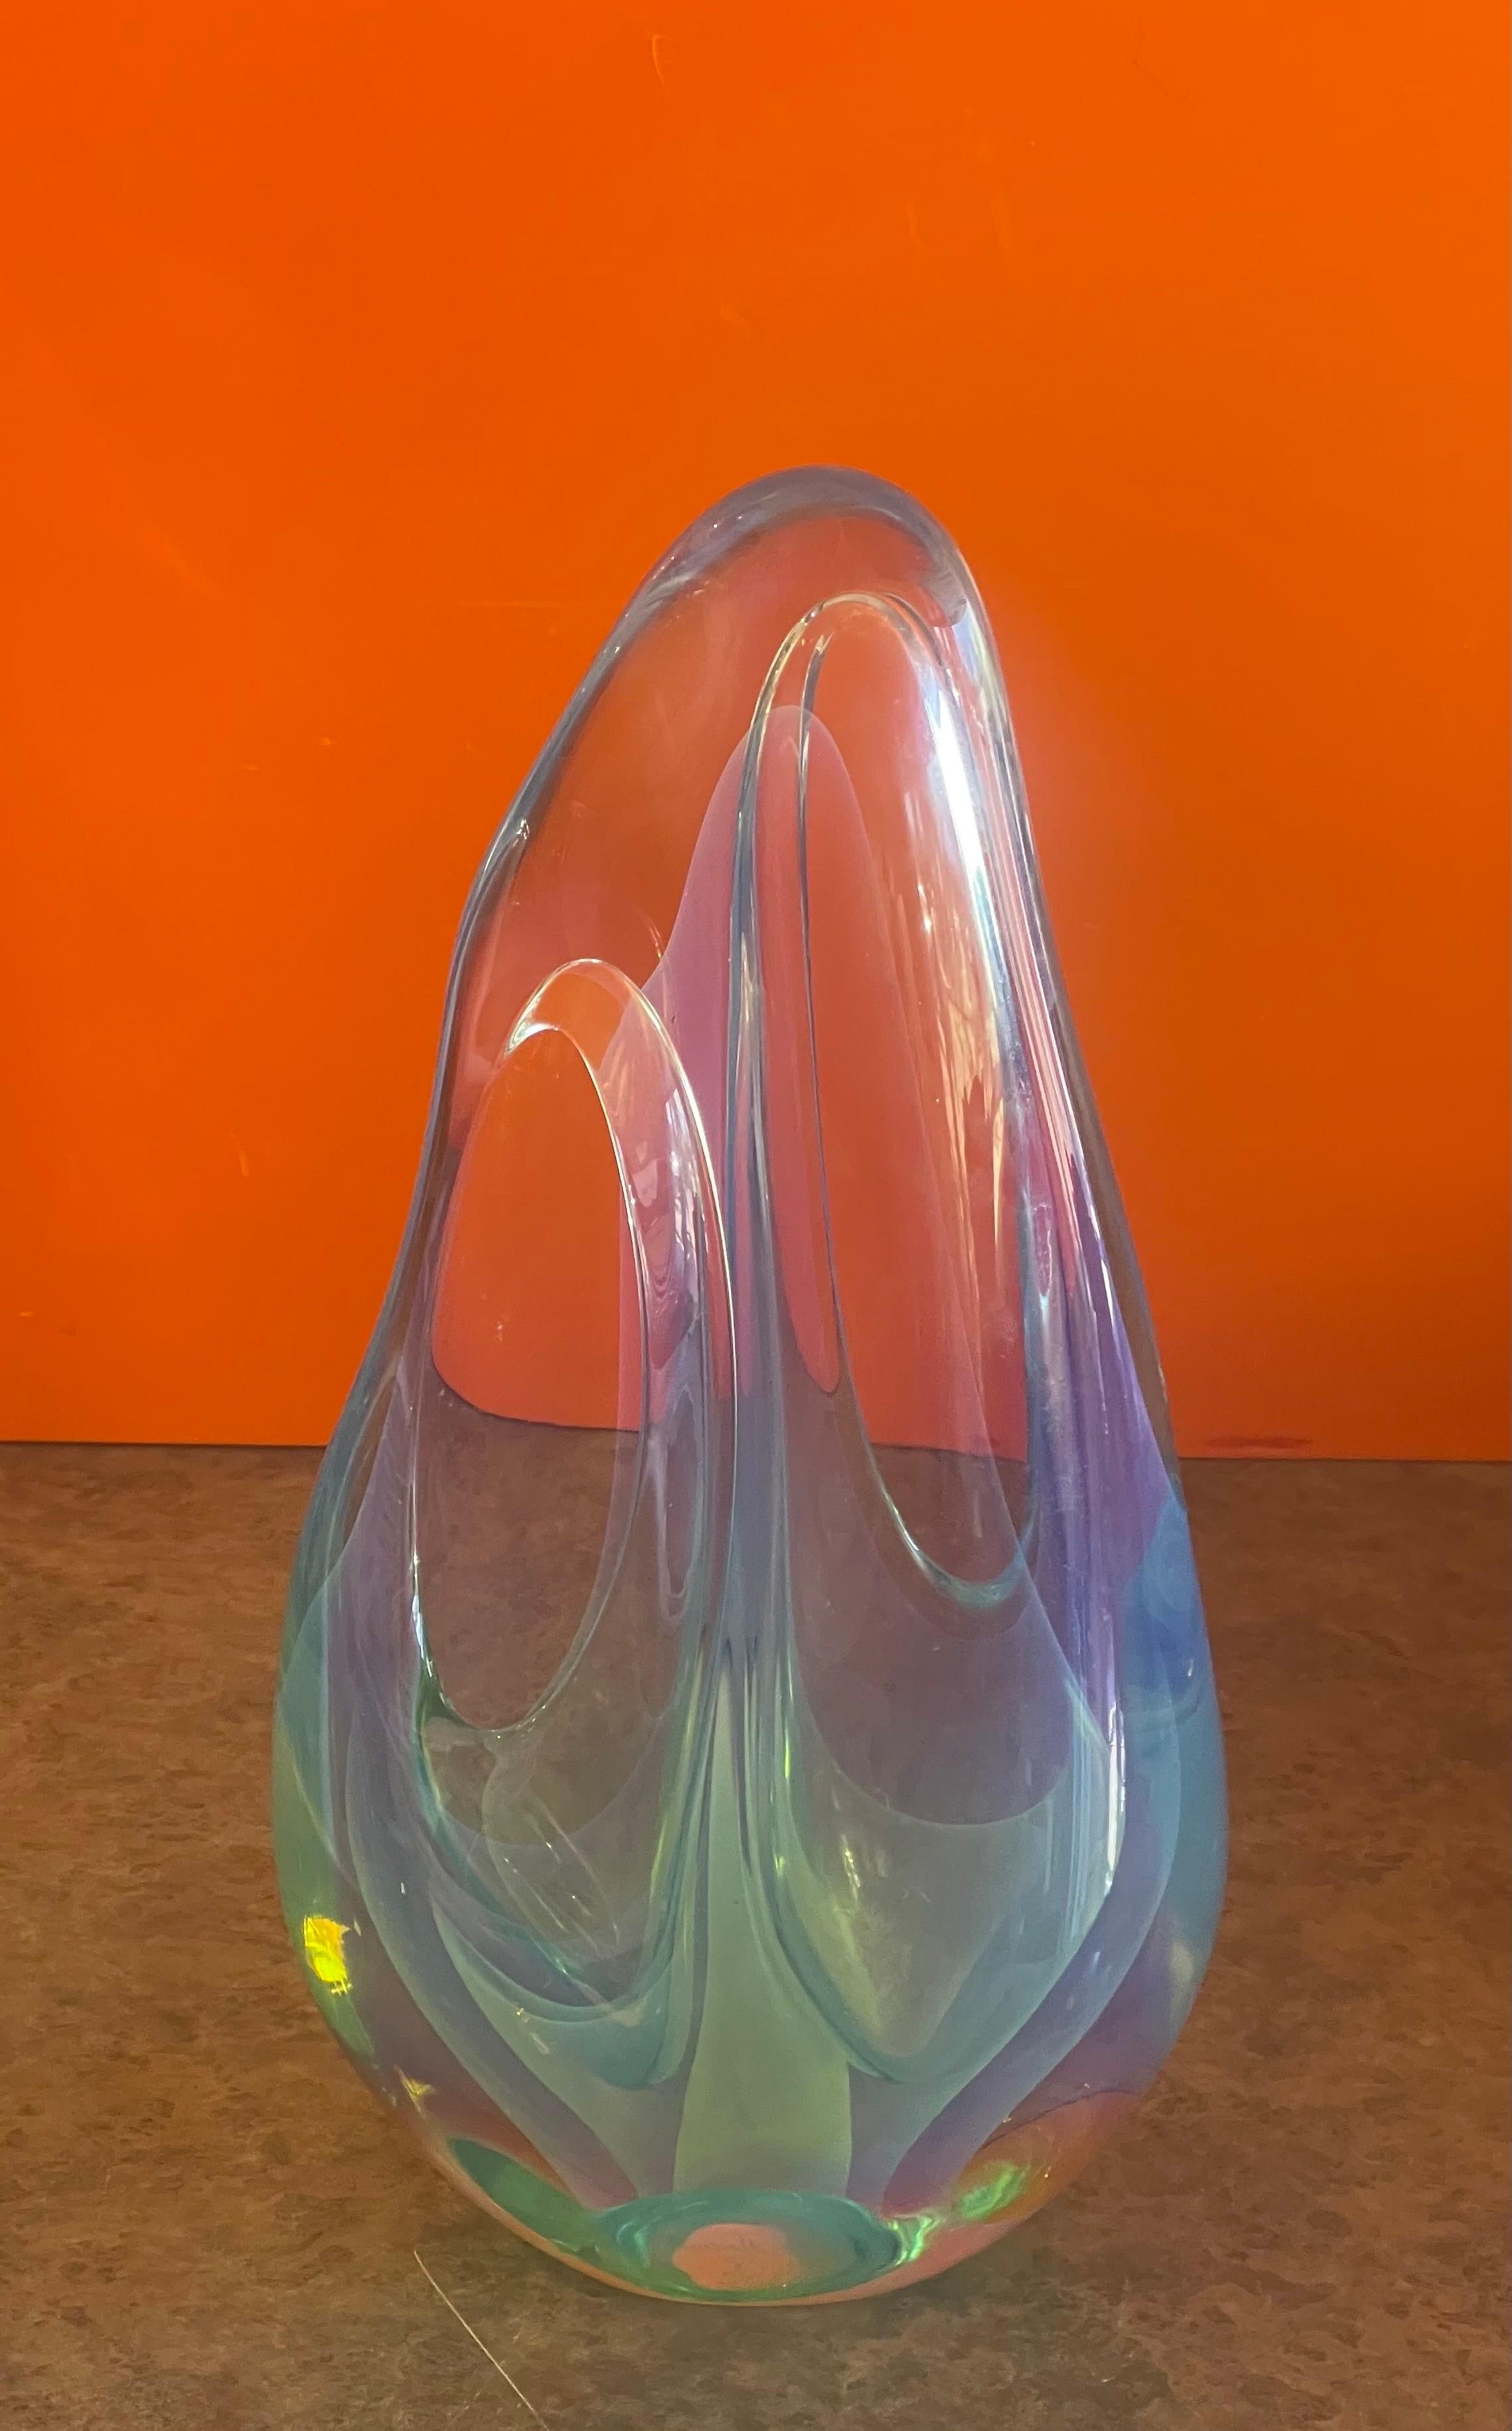 Une sculpture en verre d'art en forme de goutte d'eau à l'opalescence bleutée absolument stupéfiante, réalisée par Charles Wright vers 1980. C'est un bel exemple emblématique du travail de Wright avec de grandes couleurs et une grande clarté ; cette